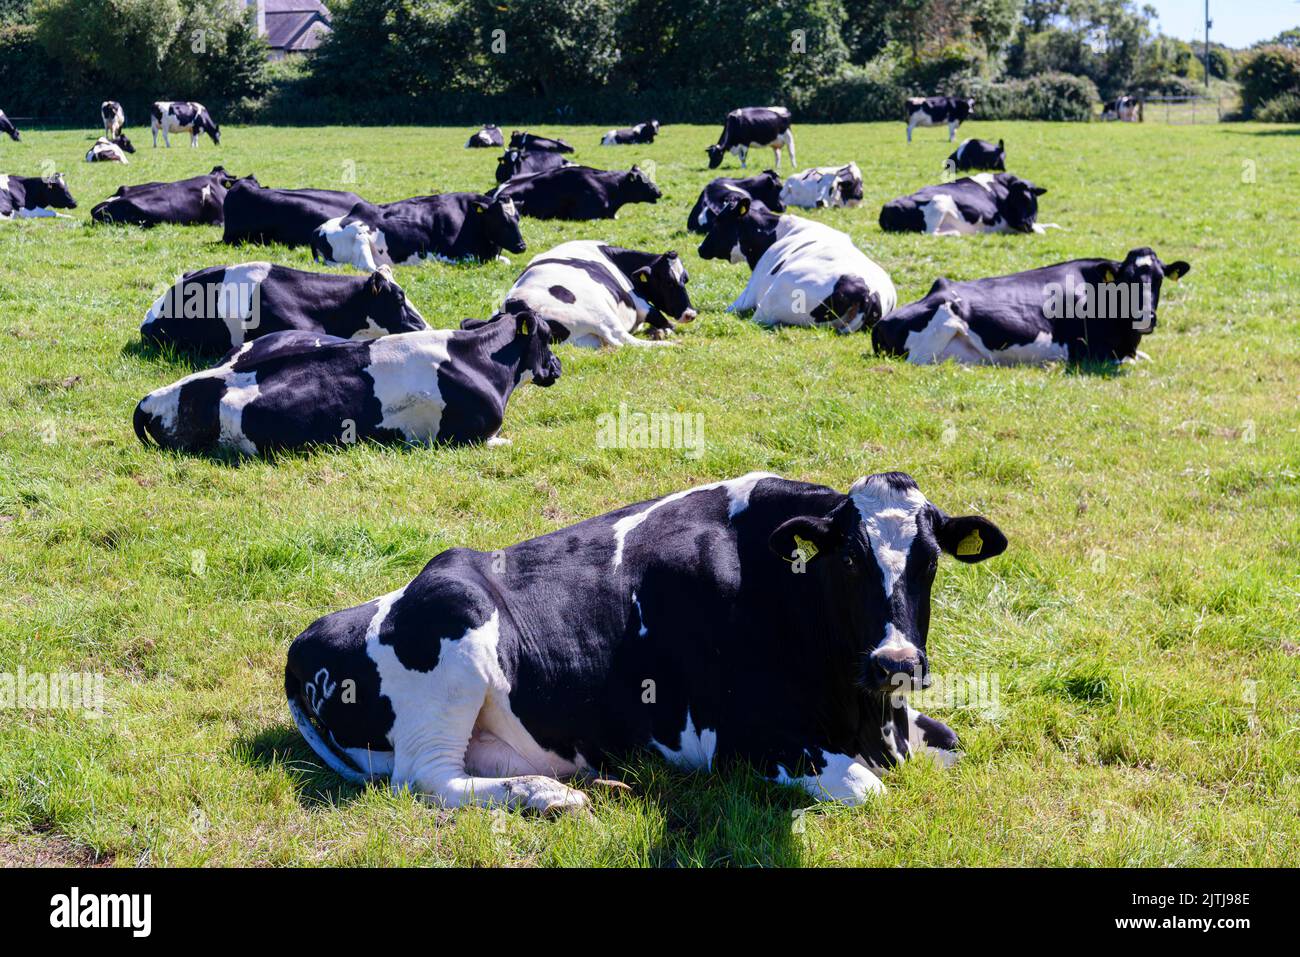 Vaches couché dans un champ tout en ruminant (mâcher le cud). Banque D'Images